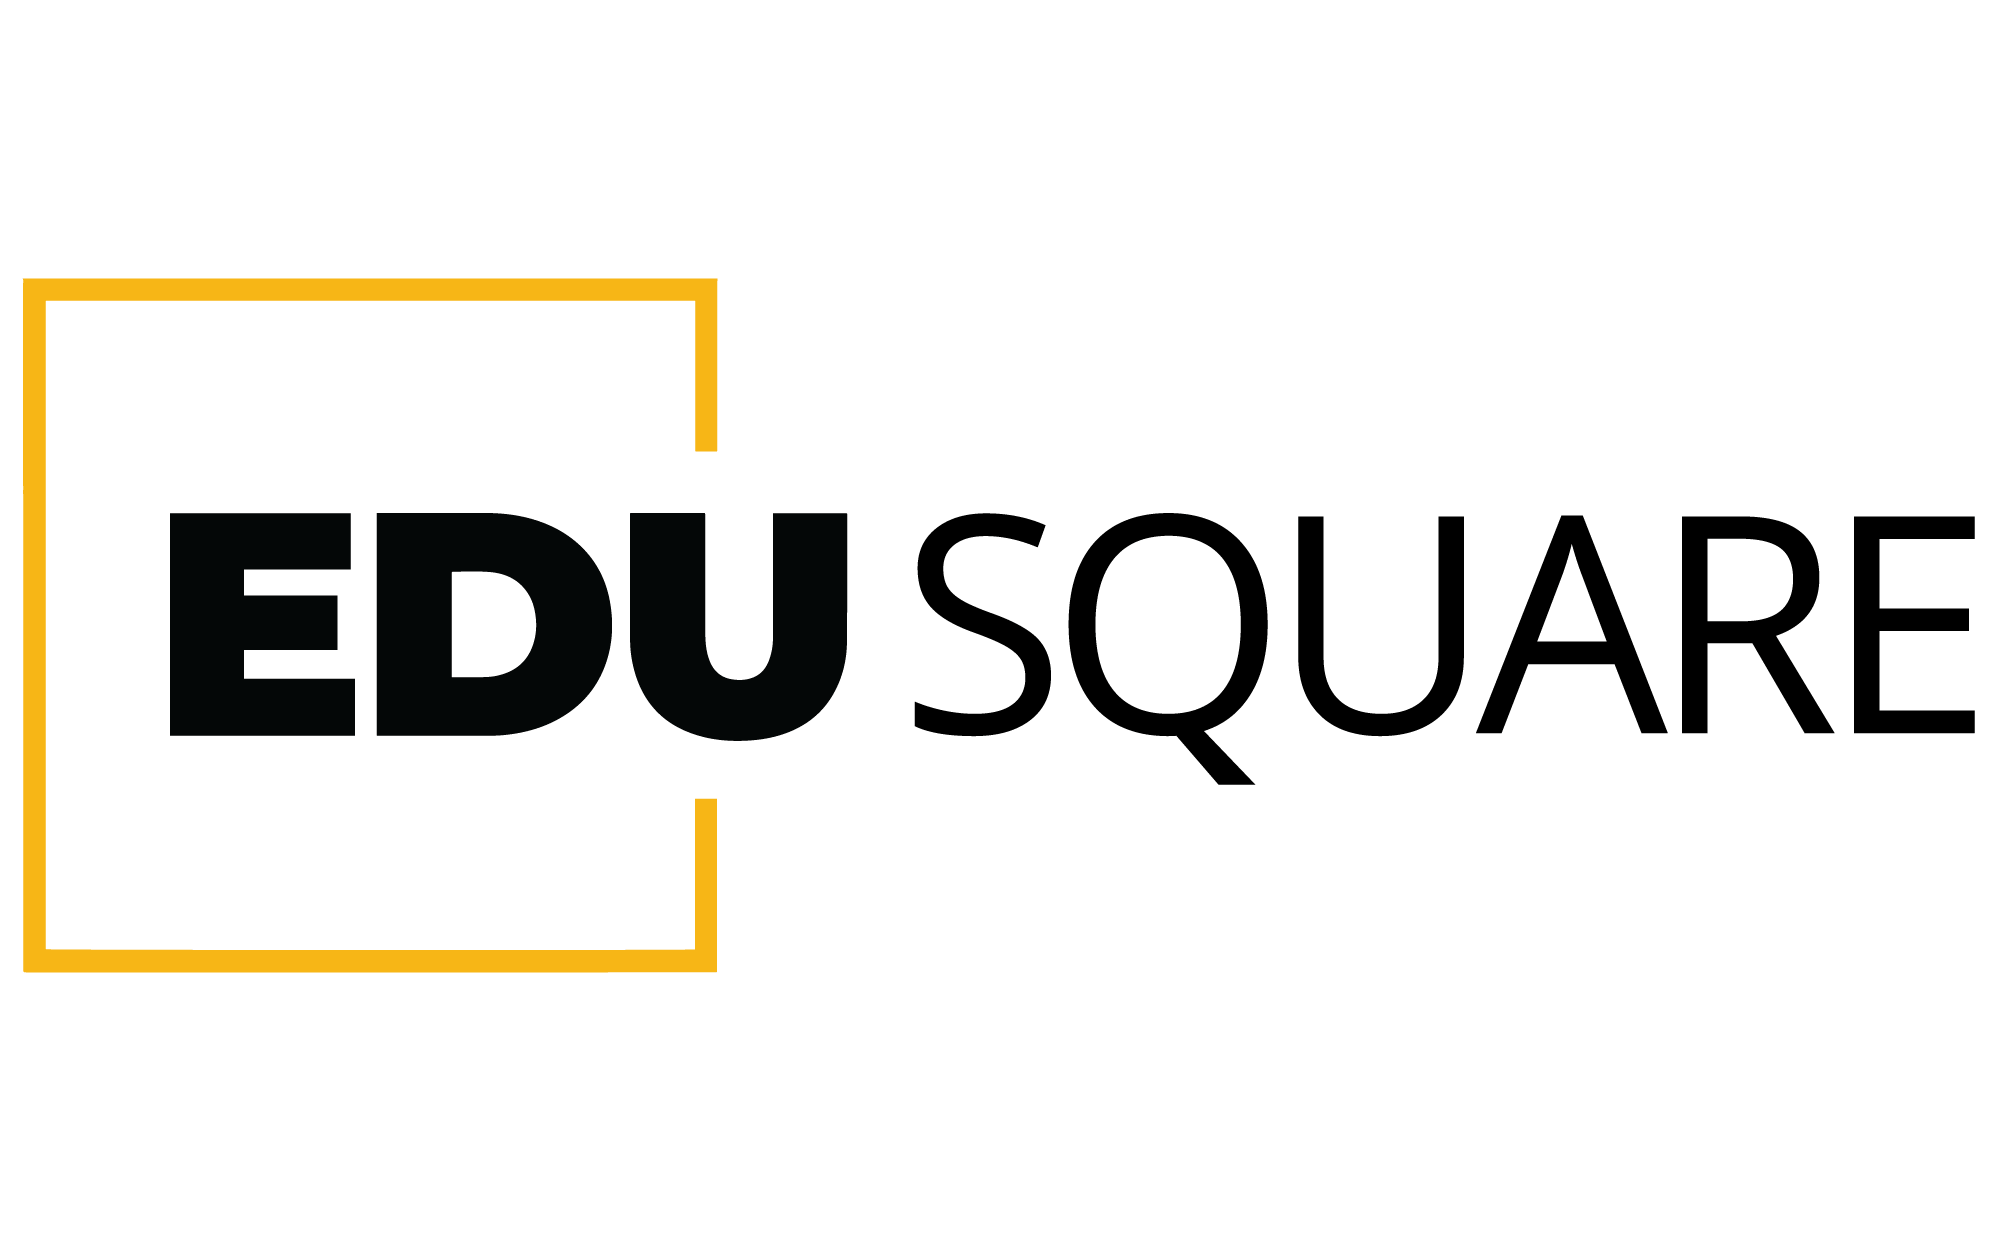 Edusquare Coaching Institute|Schools|Education